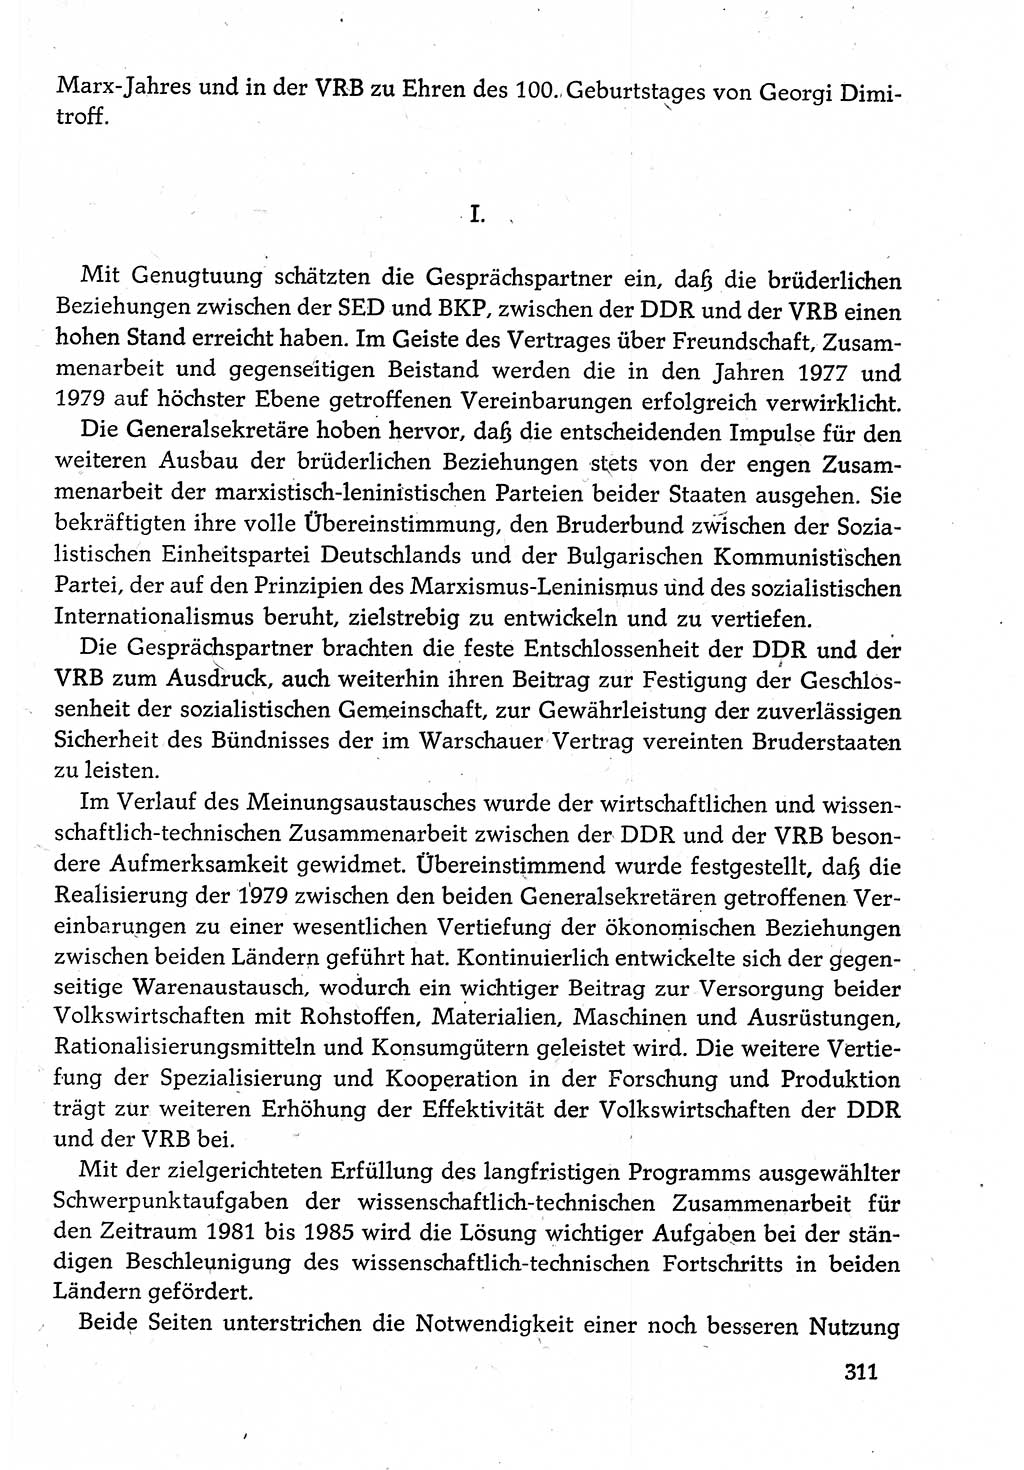 Dokumente der Sozialistischen Einheitspartei Deutschlands (SED) [Deutsche Demokratische Republik (DDR)] 1982-1983, Seite 311 (Dok. SED DDR 1982-1983, S. 311)